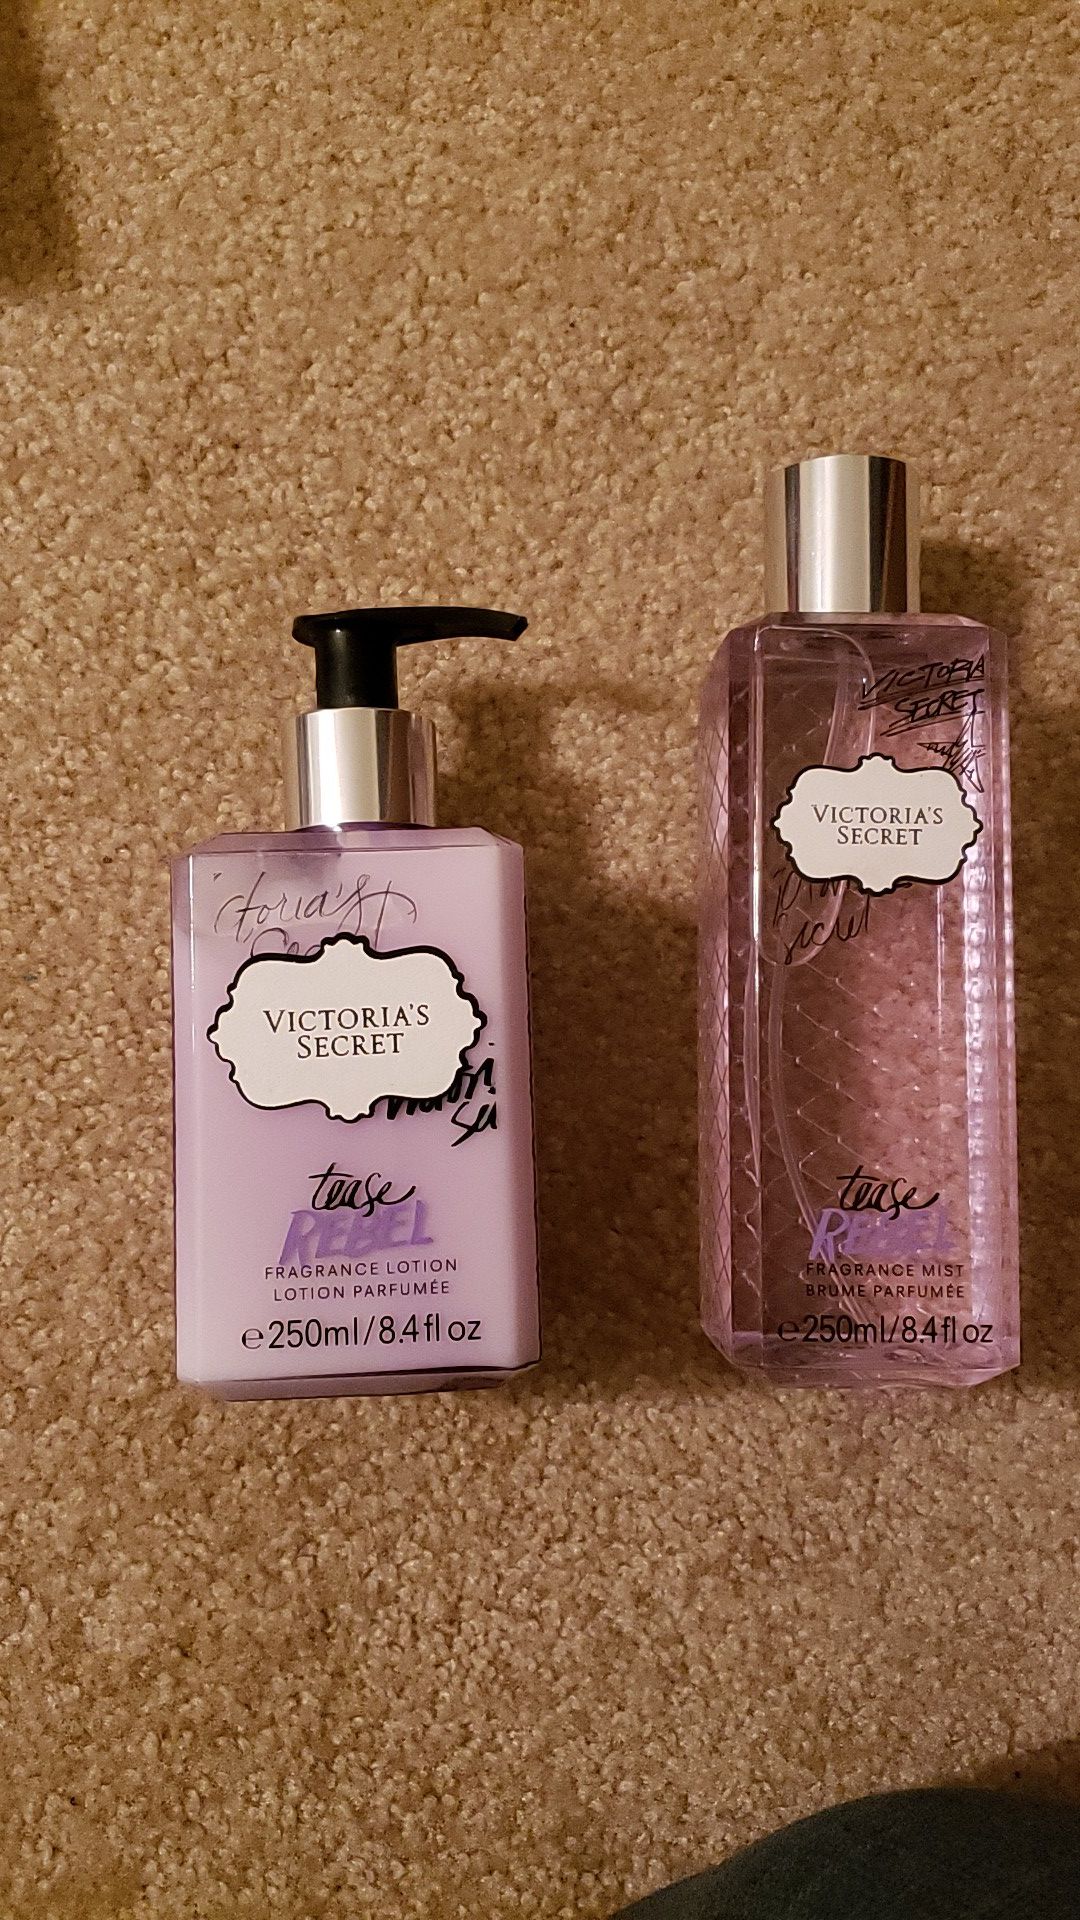 Victoria Secret Tease Rebel Fragrance Lotion and Fragrance Mist